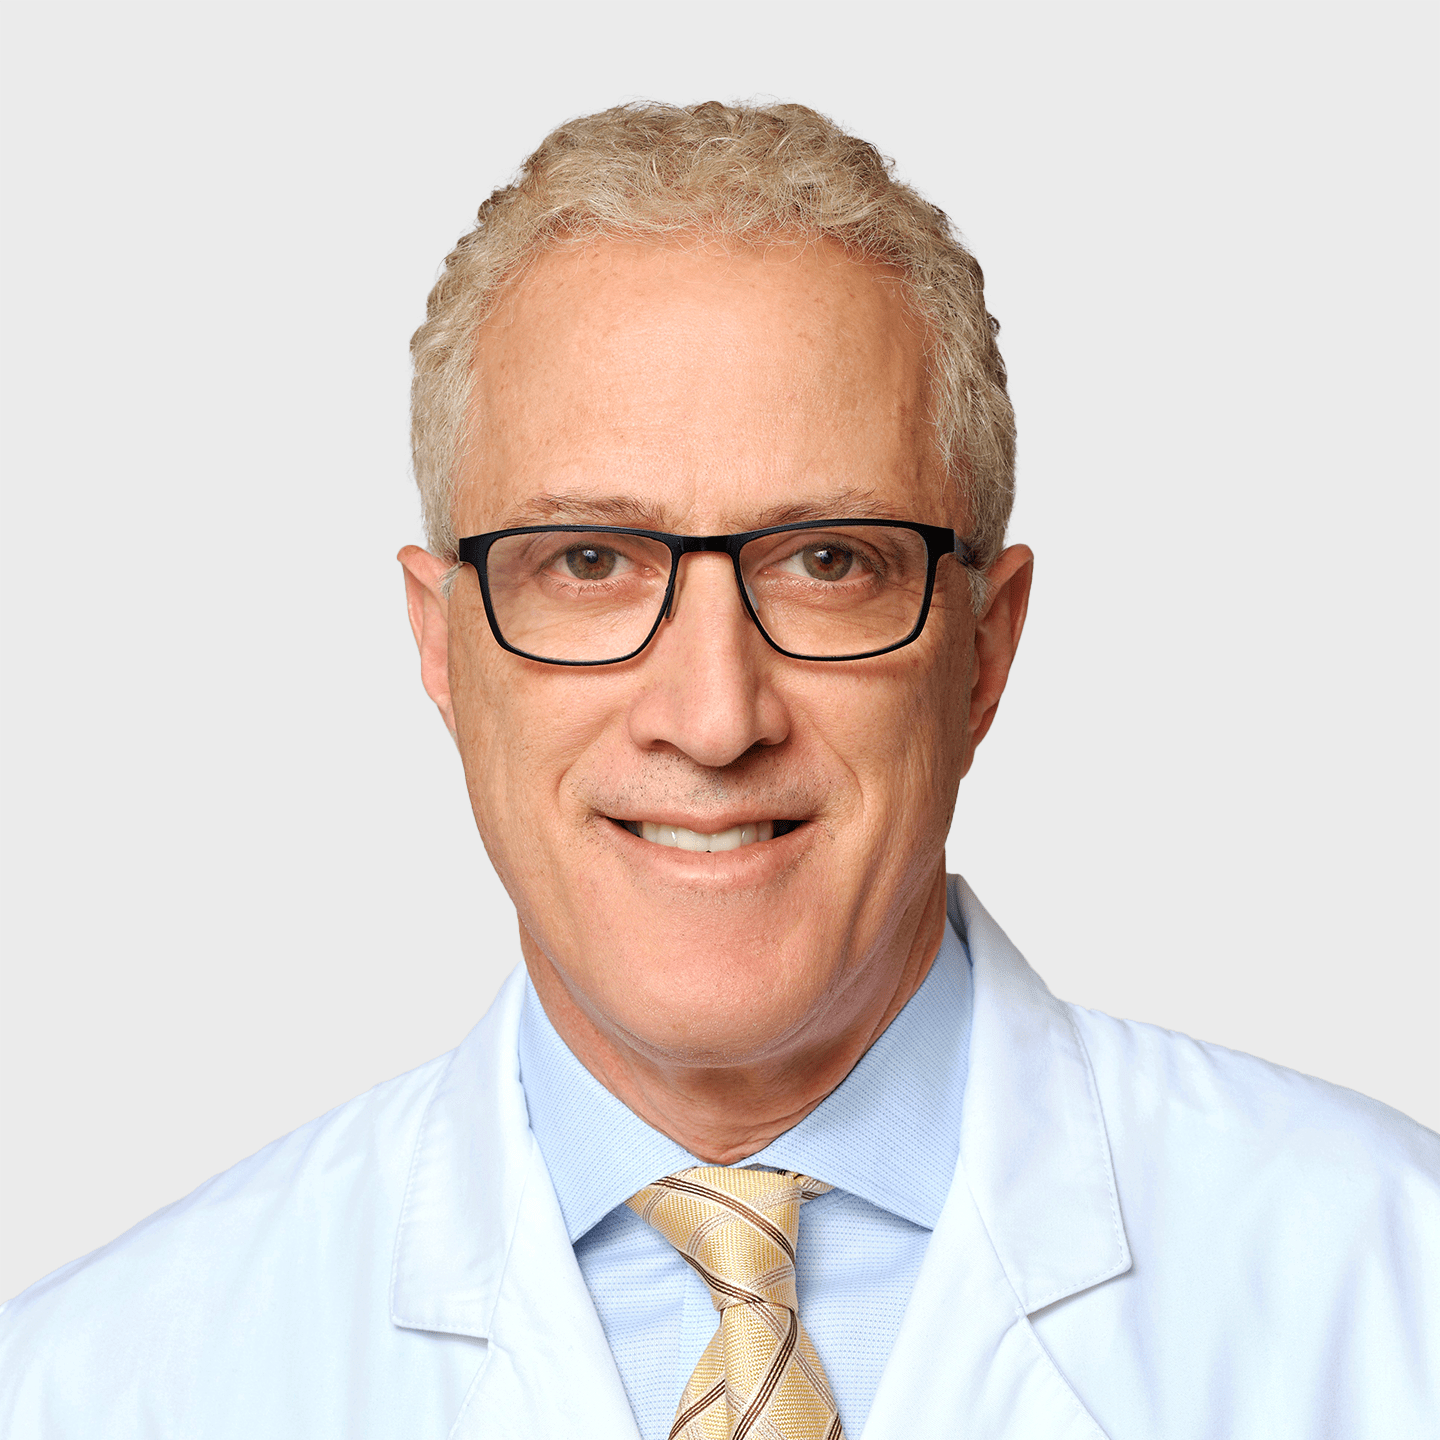 Physician Spotlight on Dr. Mark Lapp